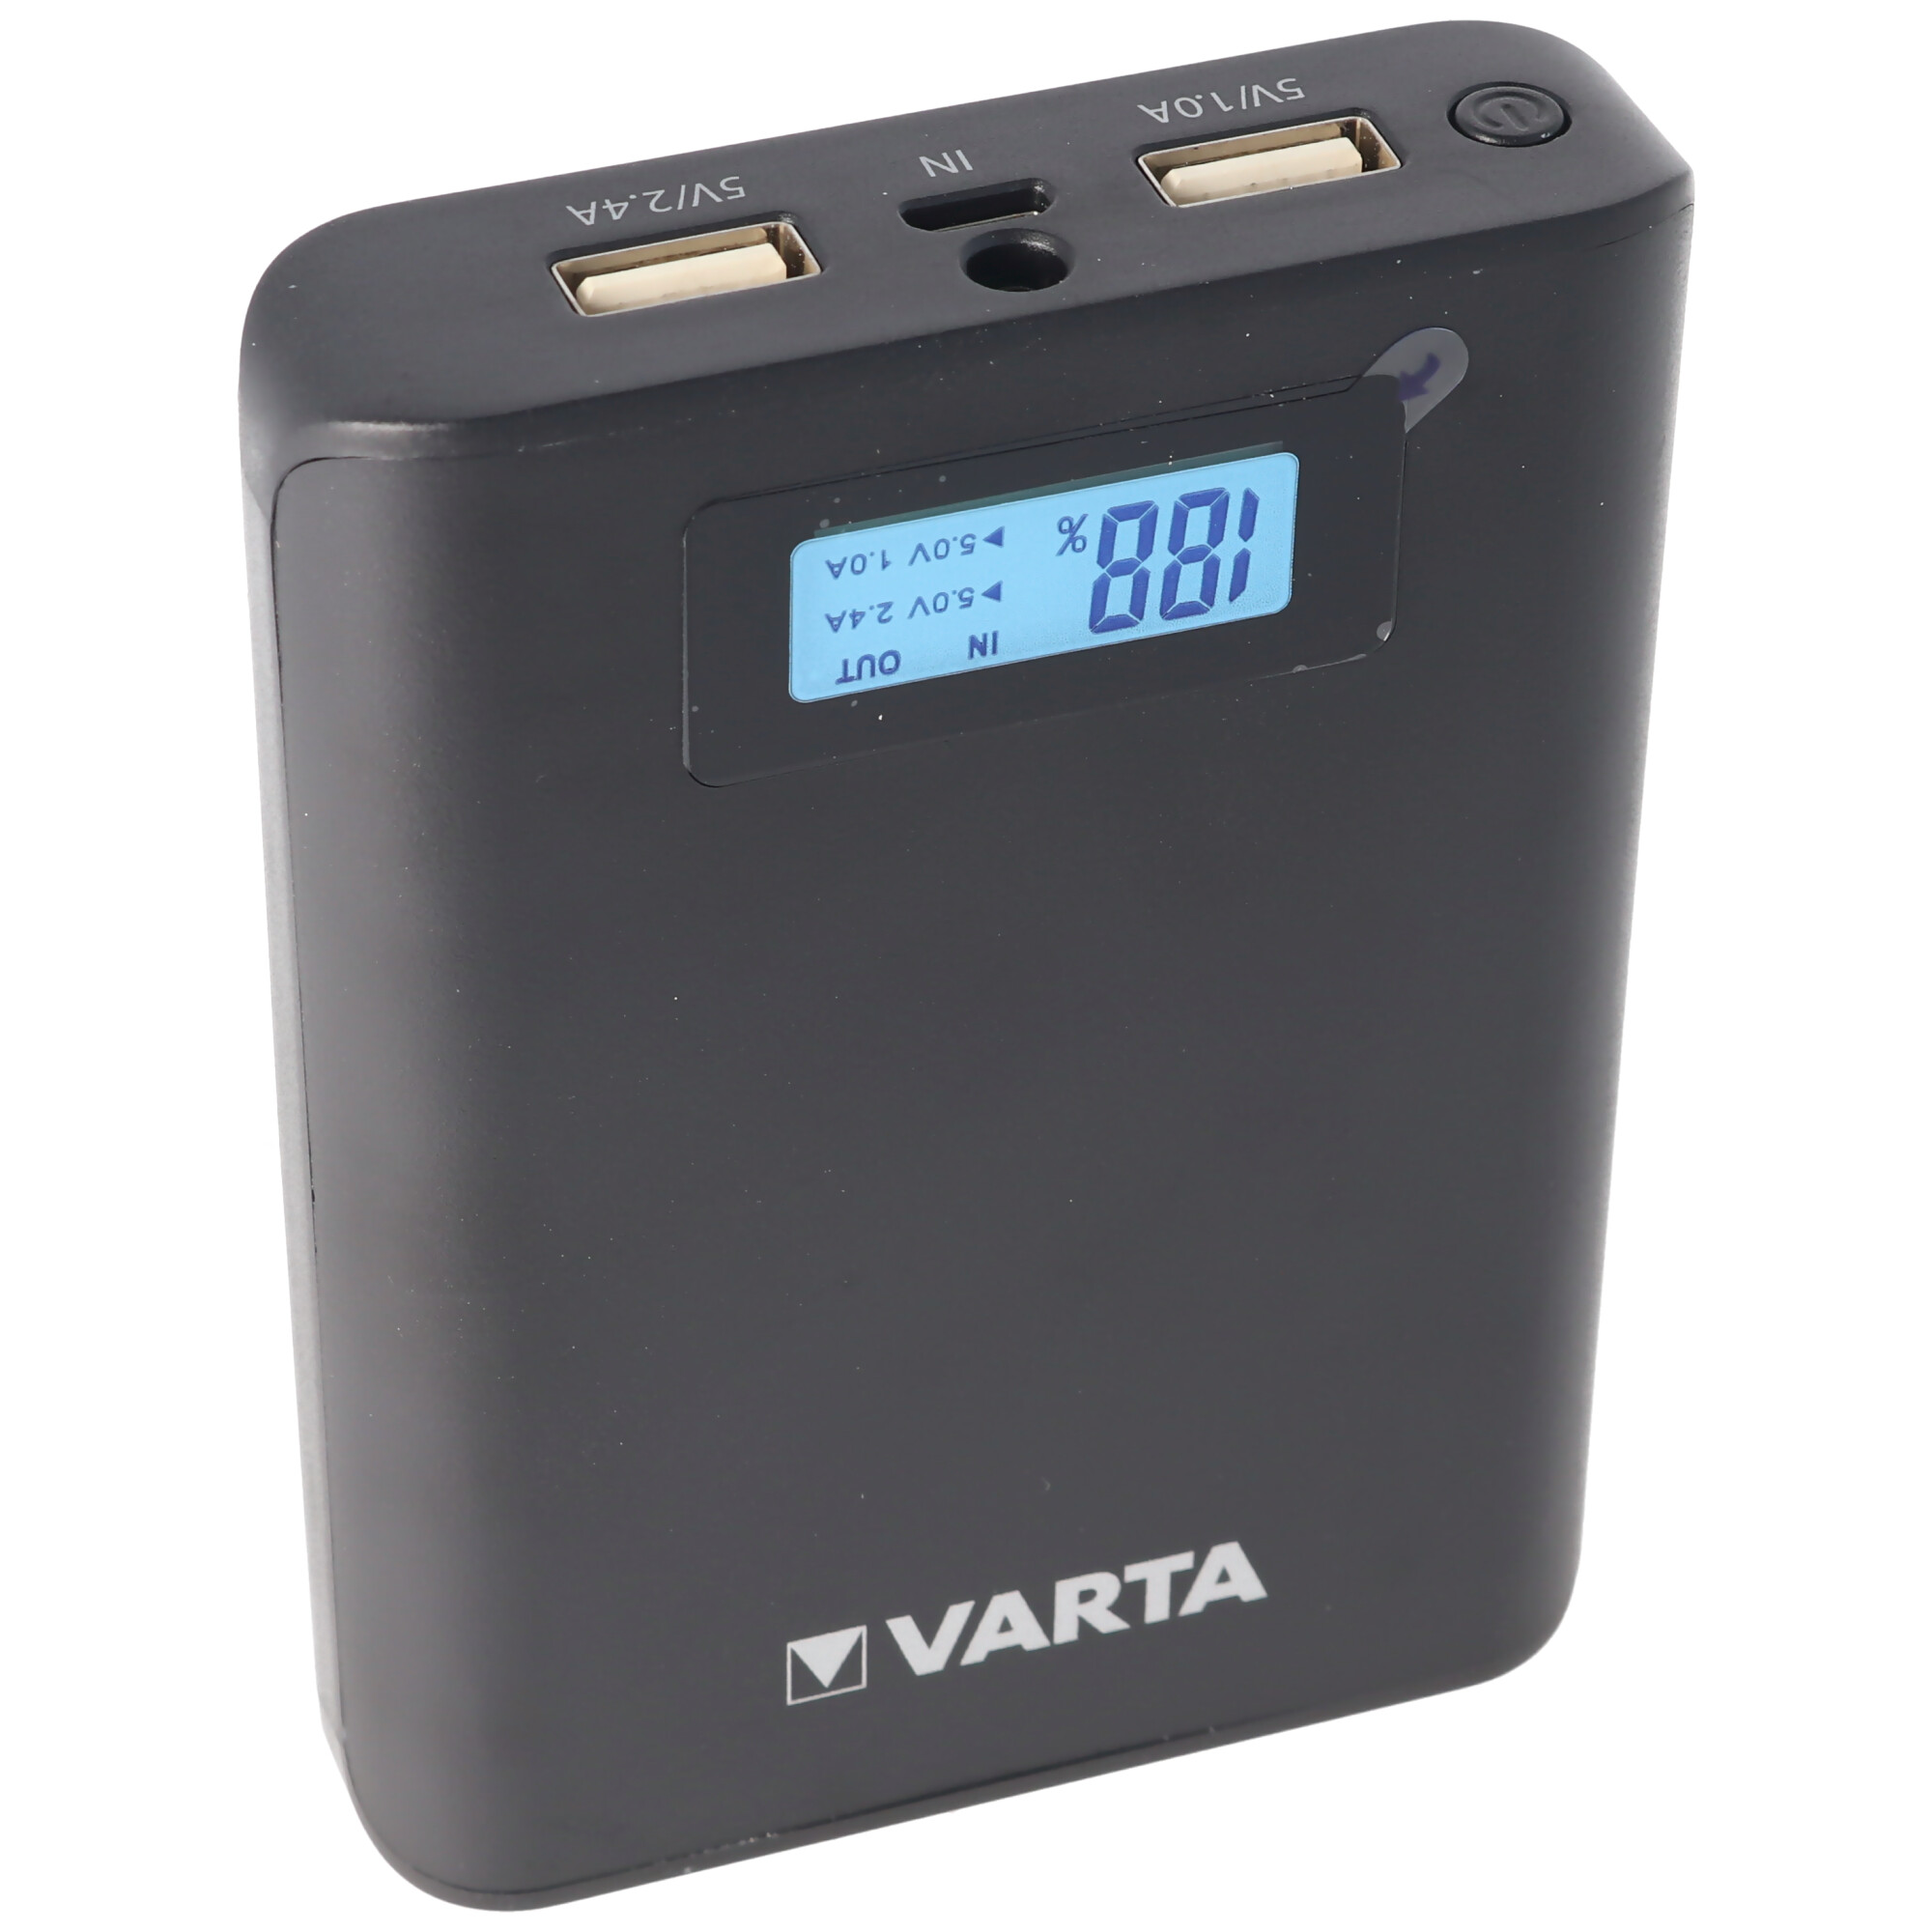 Varta Powerbank LCD 7800mAh Ladestrom max. 2,4A mit Micro USB Ladekabel und 2x USB Anschluss